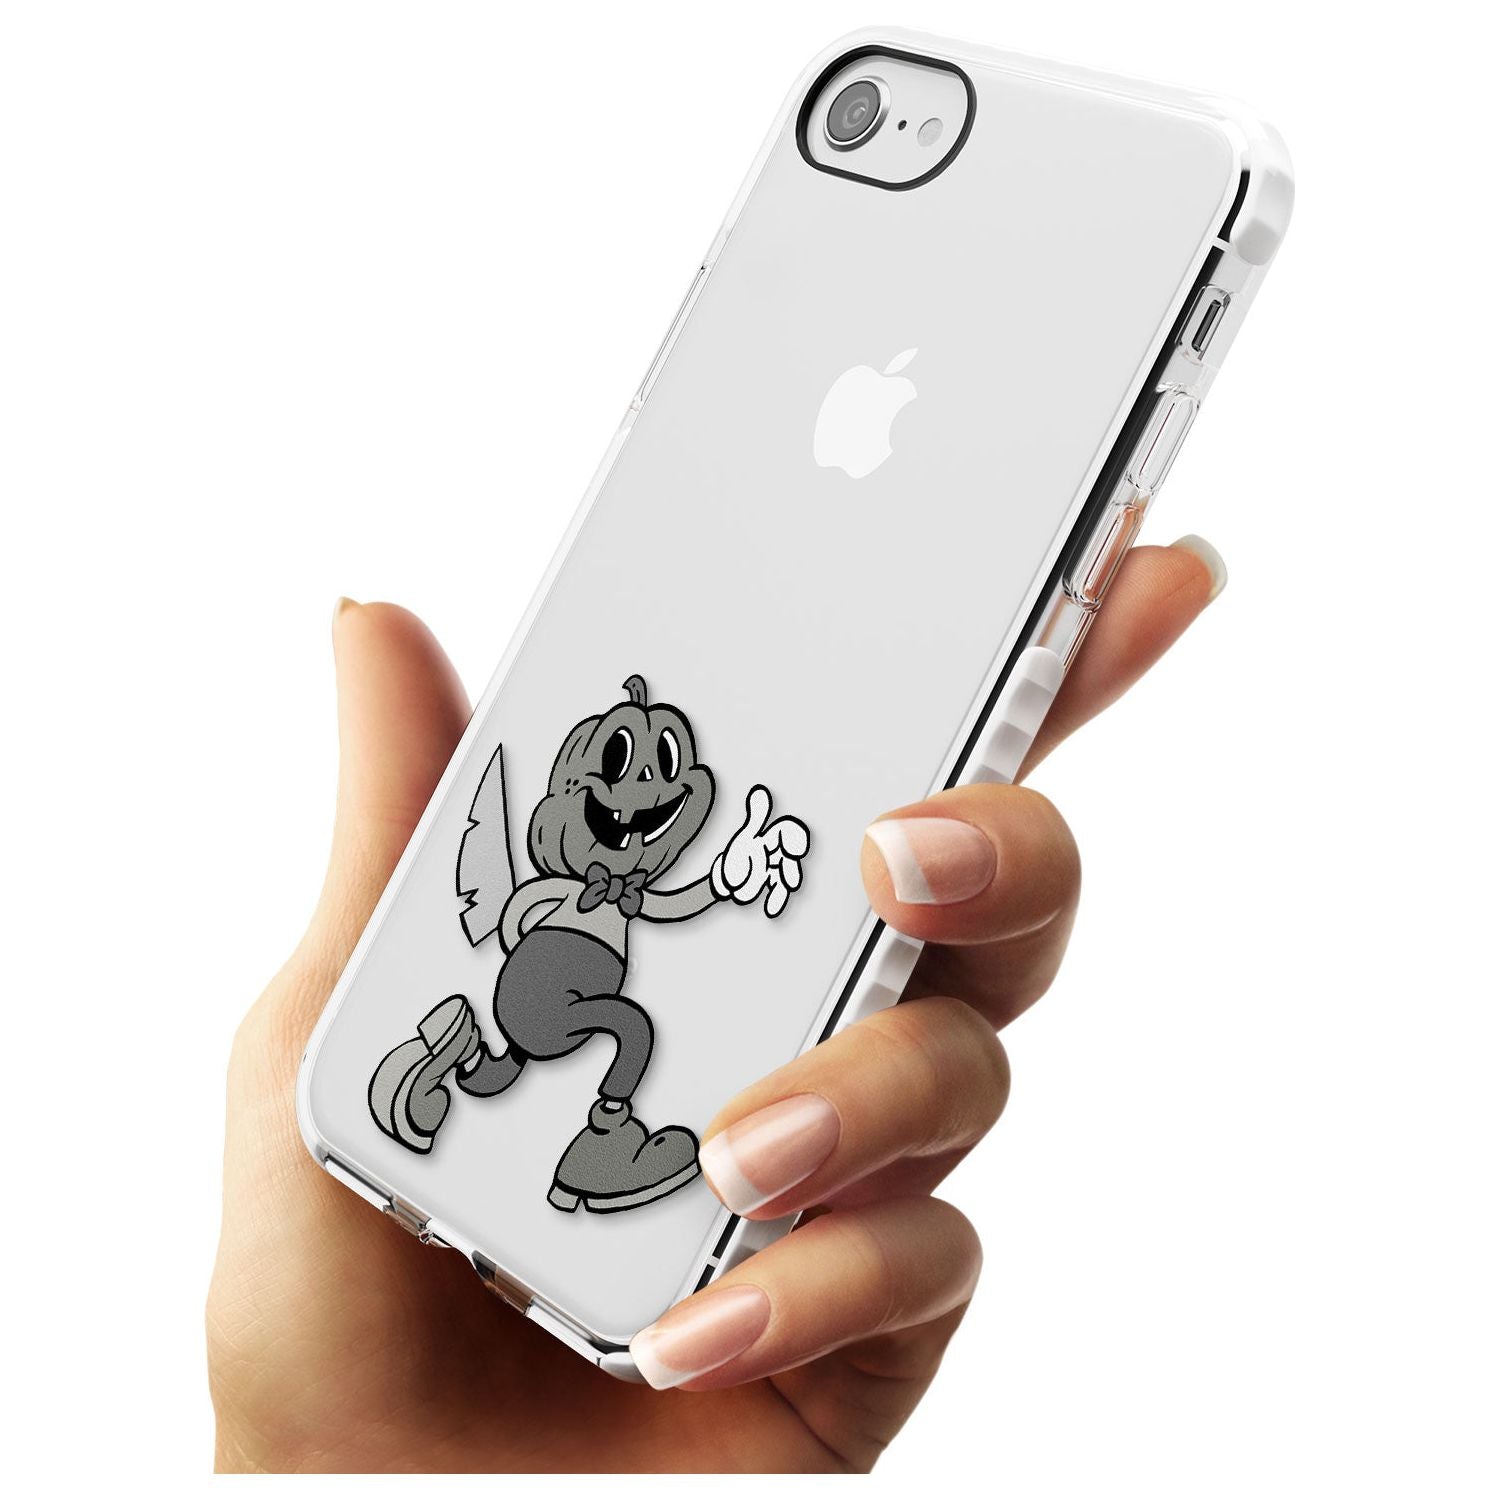 Jack o' slasher Impact Phone Case for iPhone SE 8 7 Plus